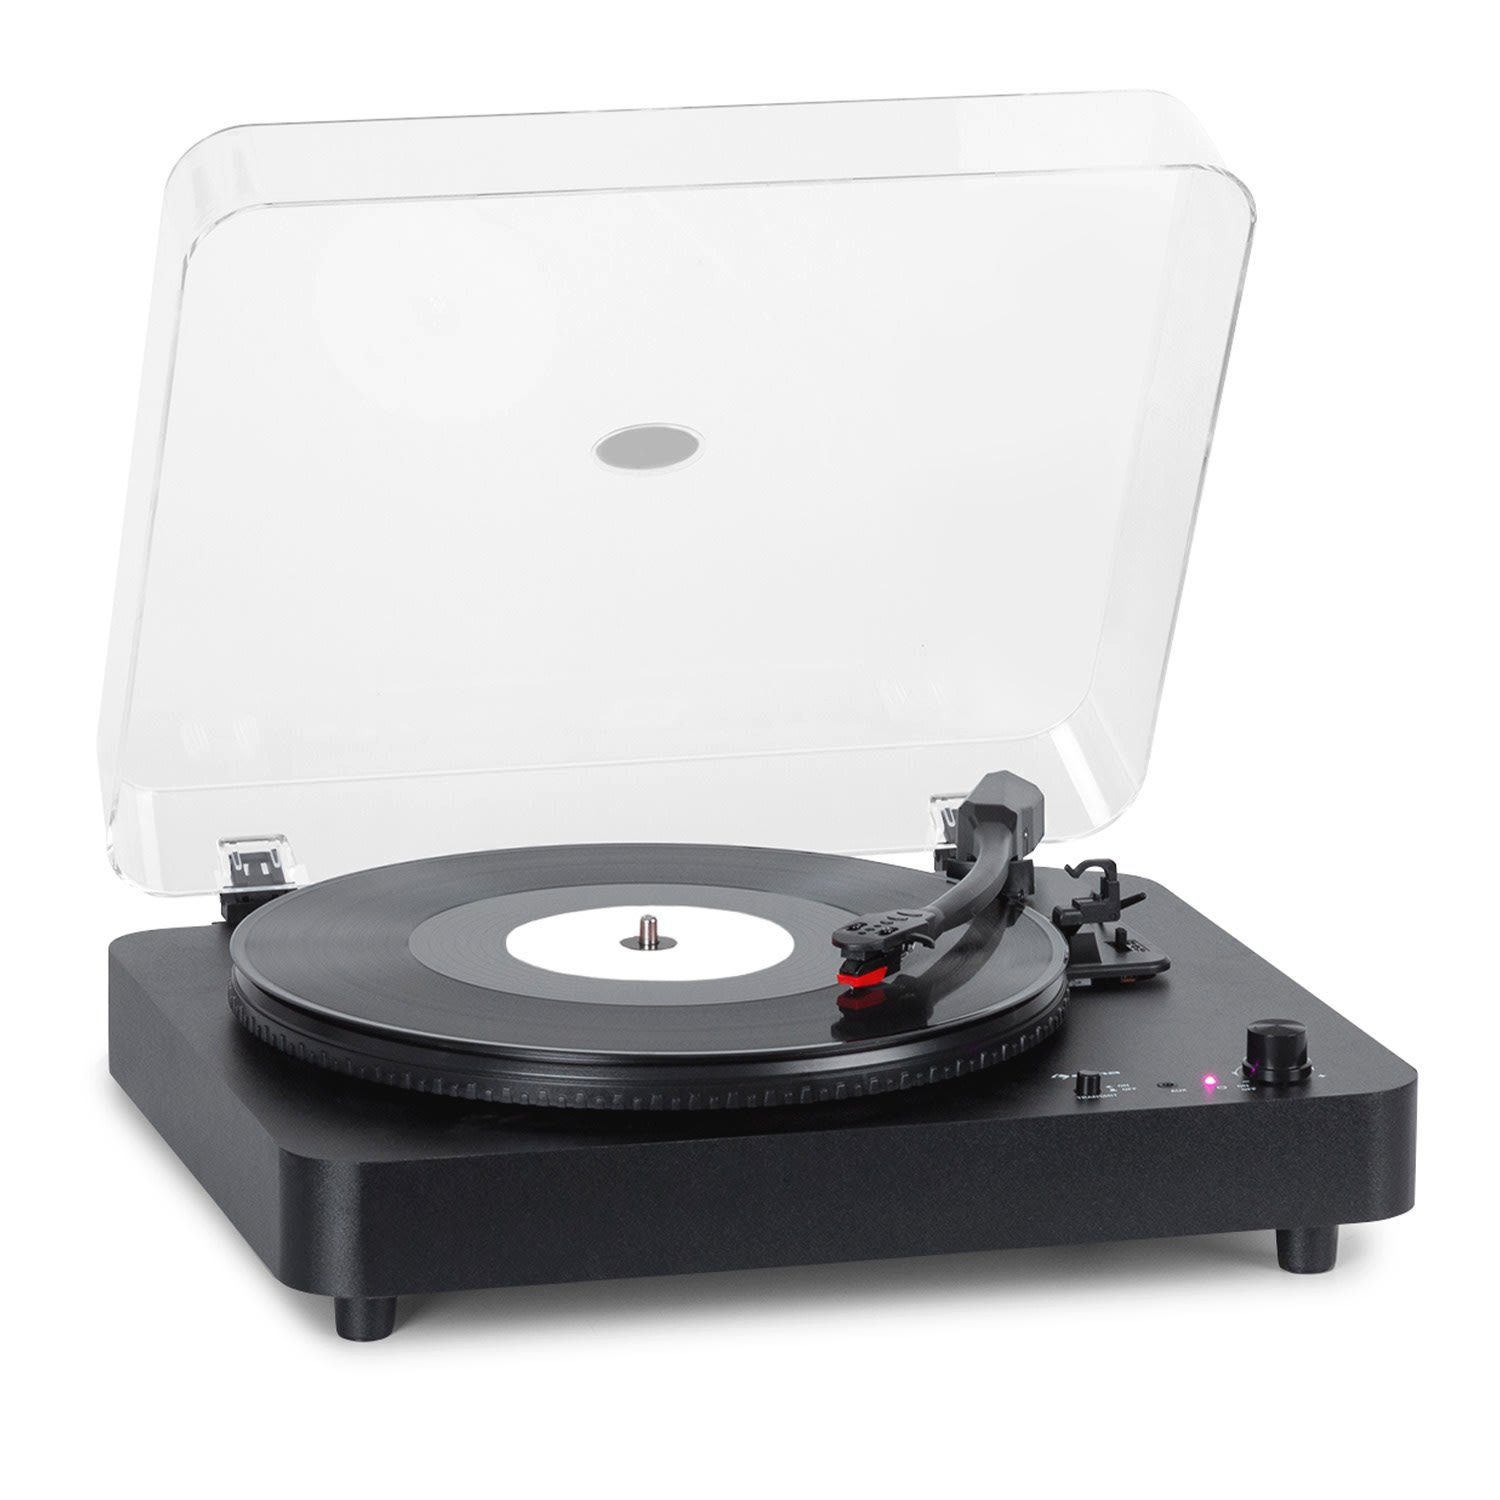 Plattenspieler (Riemenantrieb, Bluetooth, Plattenspieler) Schallplattenspieler Vinyl mit Auna Lautsprecher TT-Classic Light